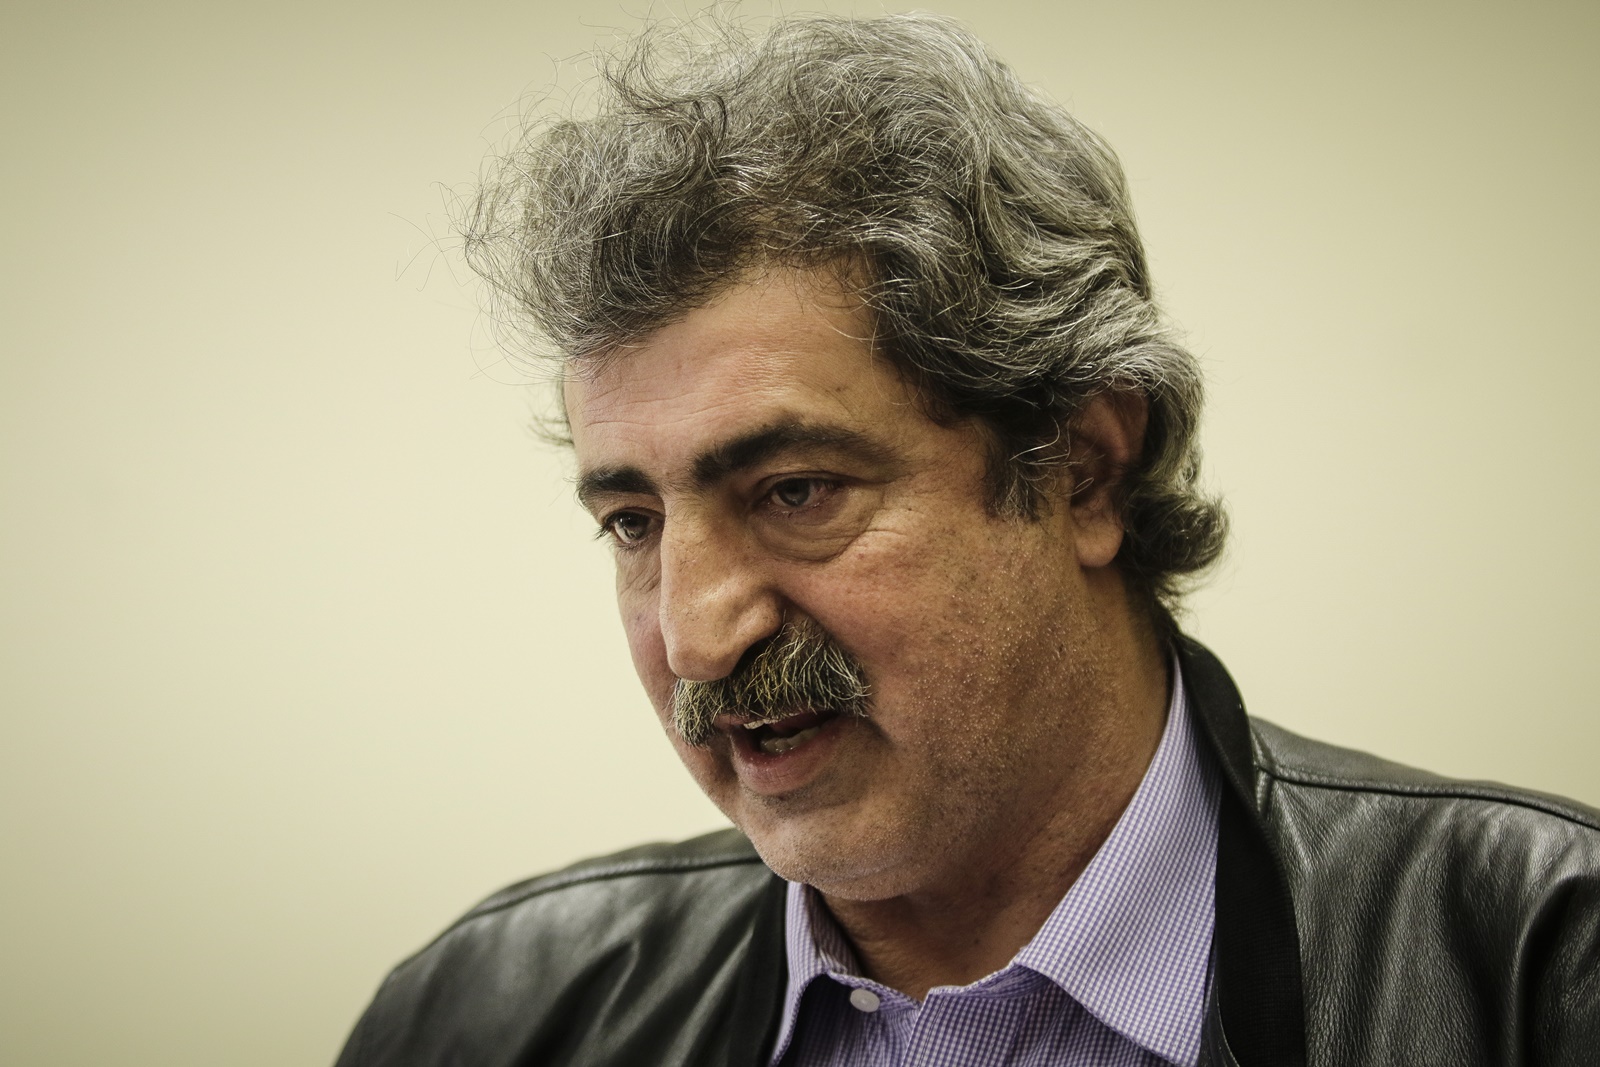 Λακοπουλος για Πολάκη: «Ο ηγέτης οφείλει να προφυλάσσει το κόμμα του και από τους σαλεμένους»